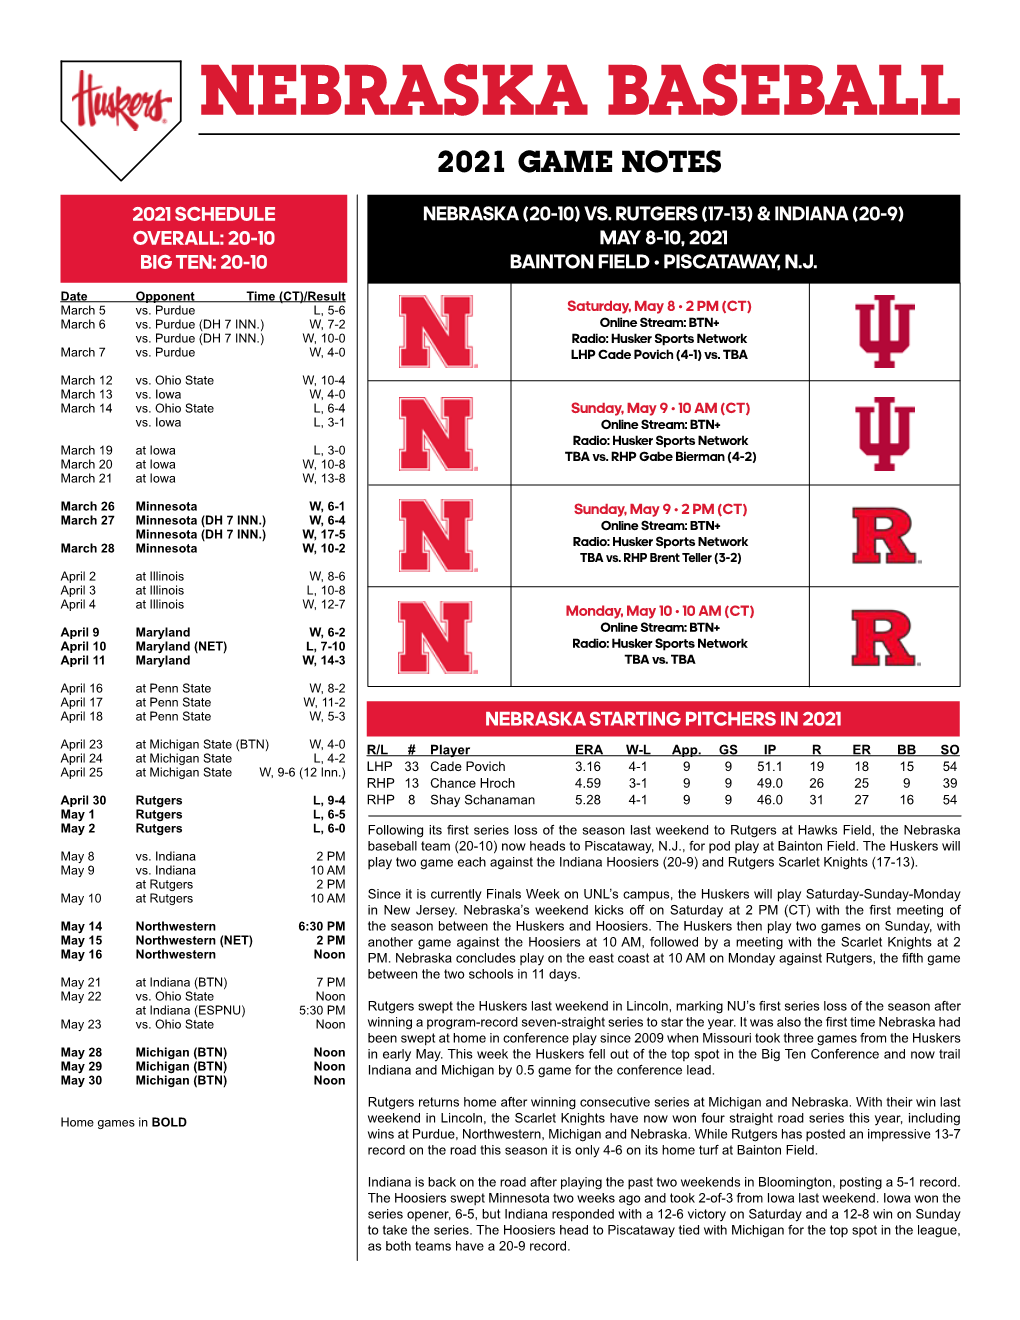 Nebraska Baseball 2021 Game Notes